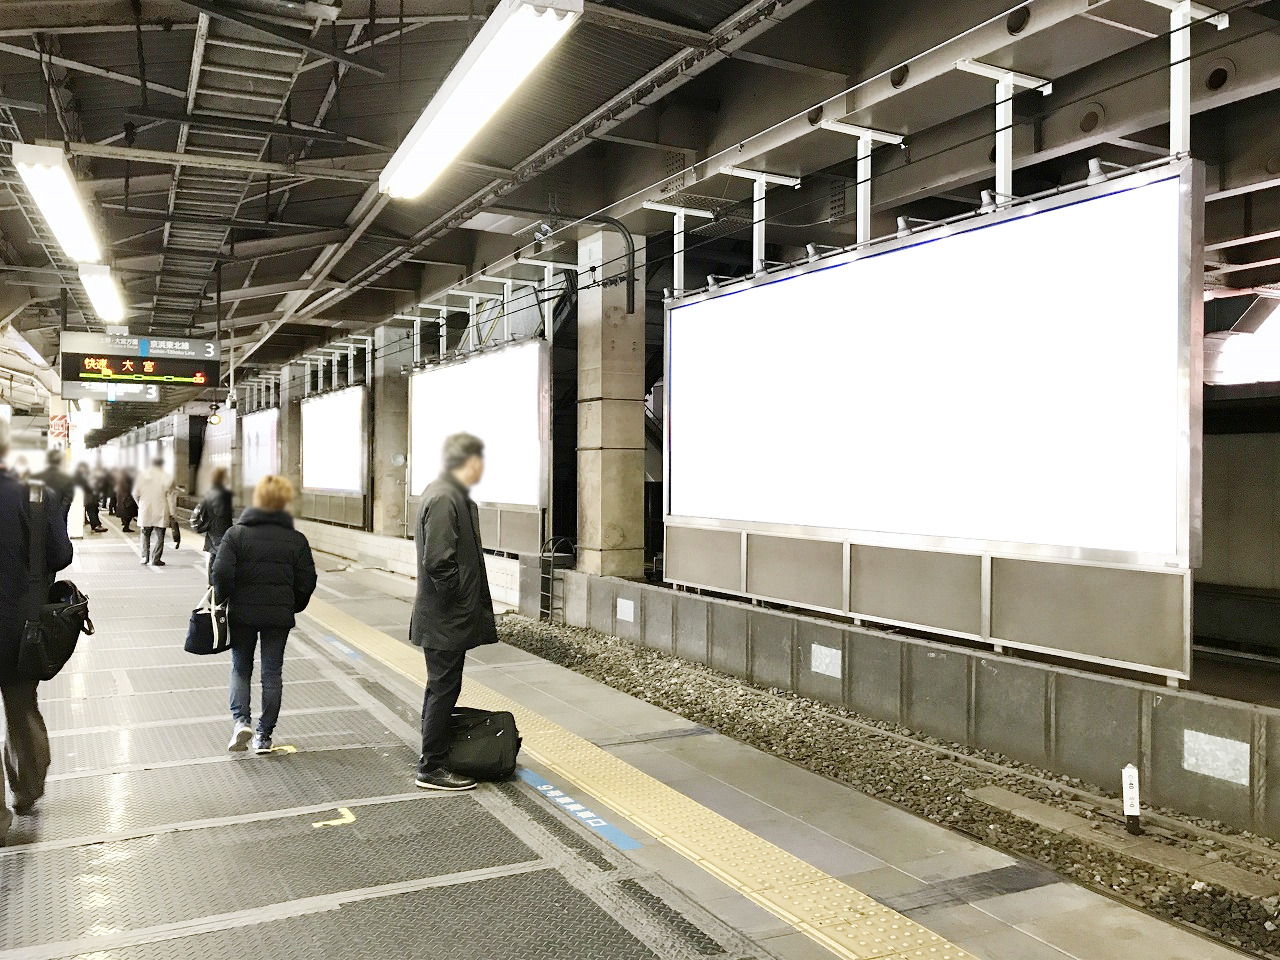 駅のホームにある広告看板のイメージ写真です。電車を待つ駅利用者に広告を見てもらえます。